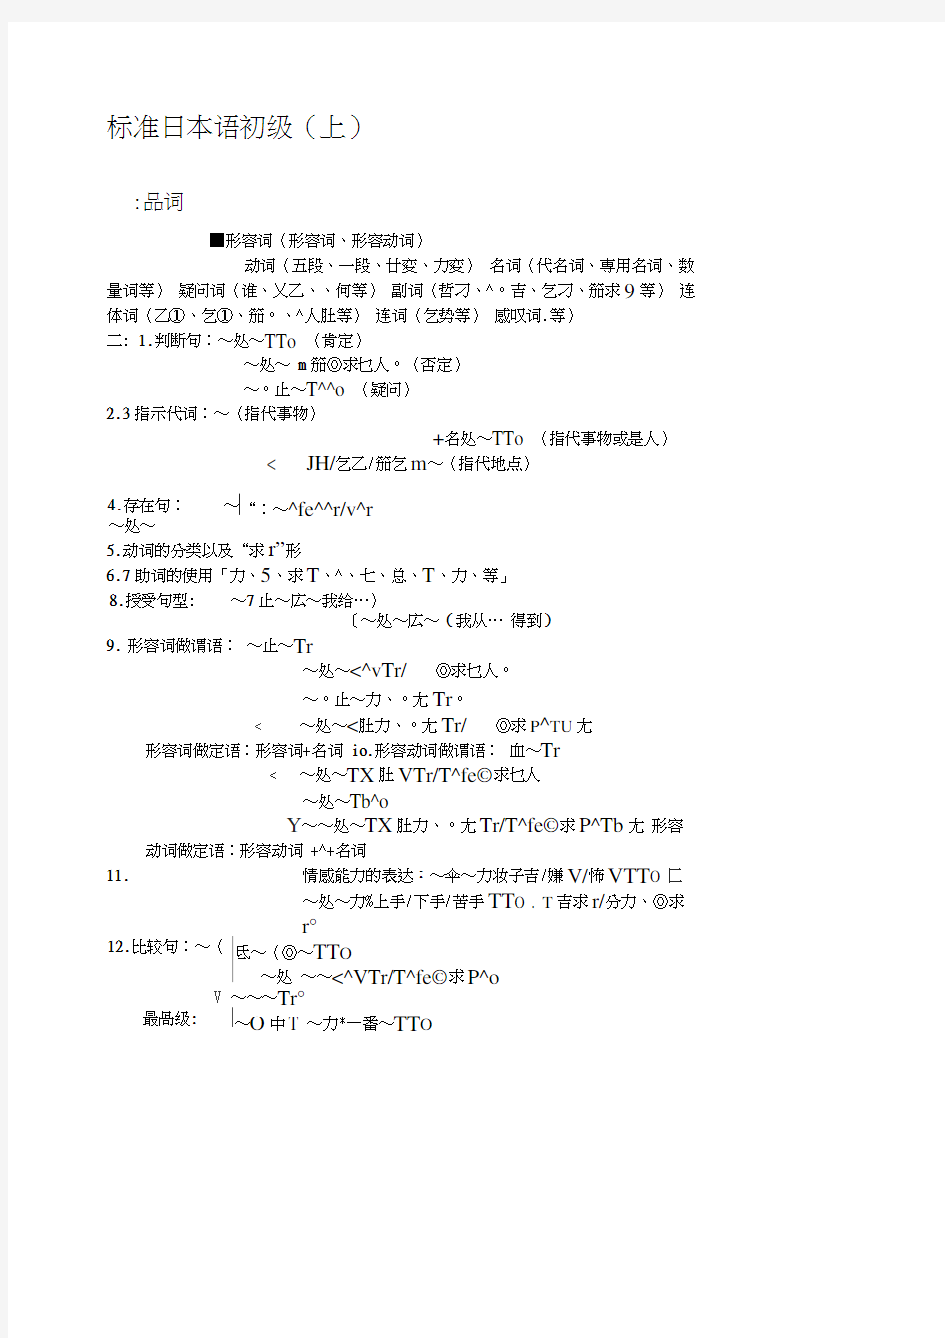 标准日本语初级上册总结